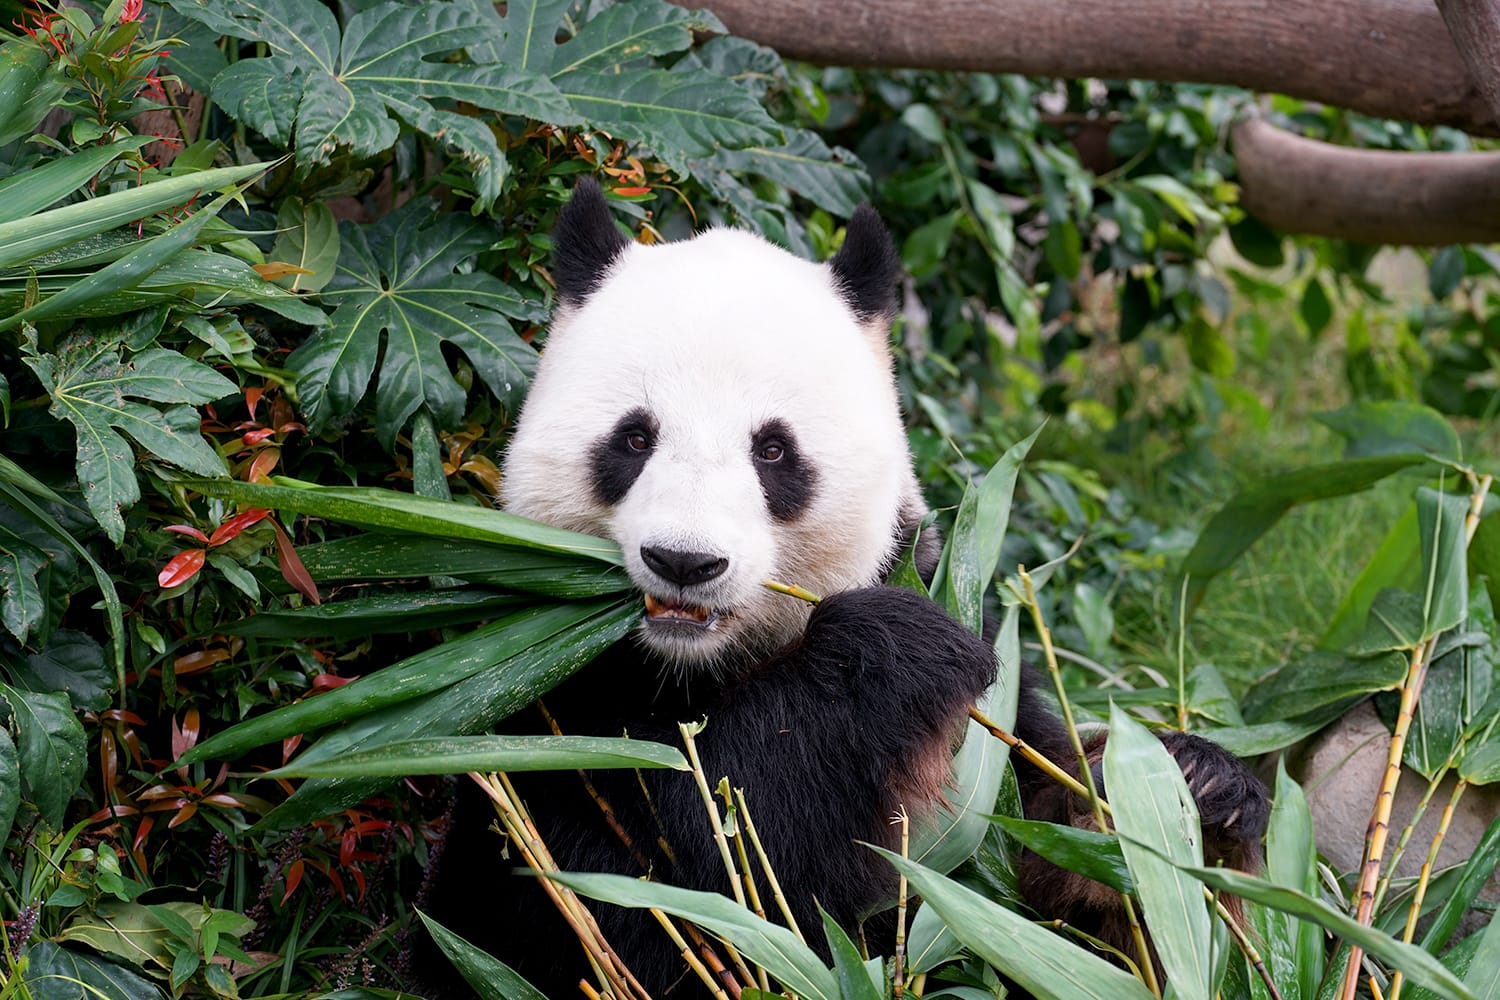 Panda eating bamboo in San Diego Zoo, California, USA